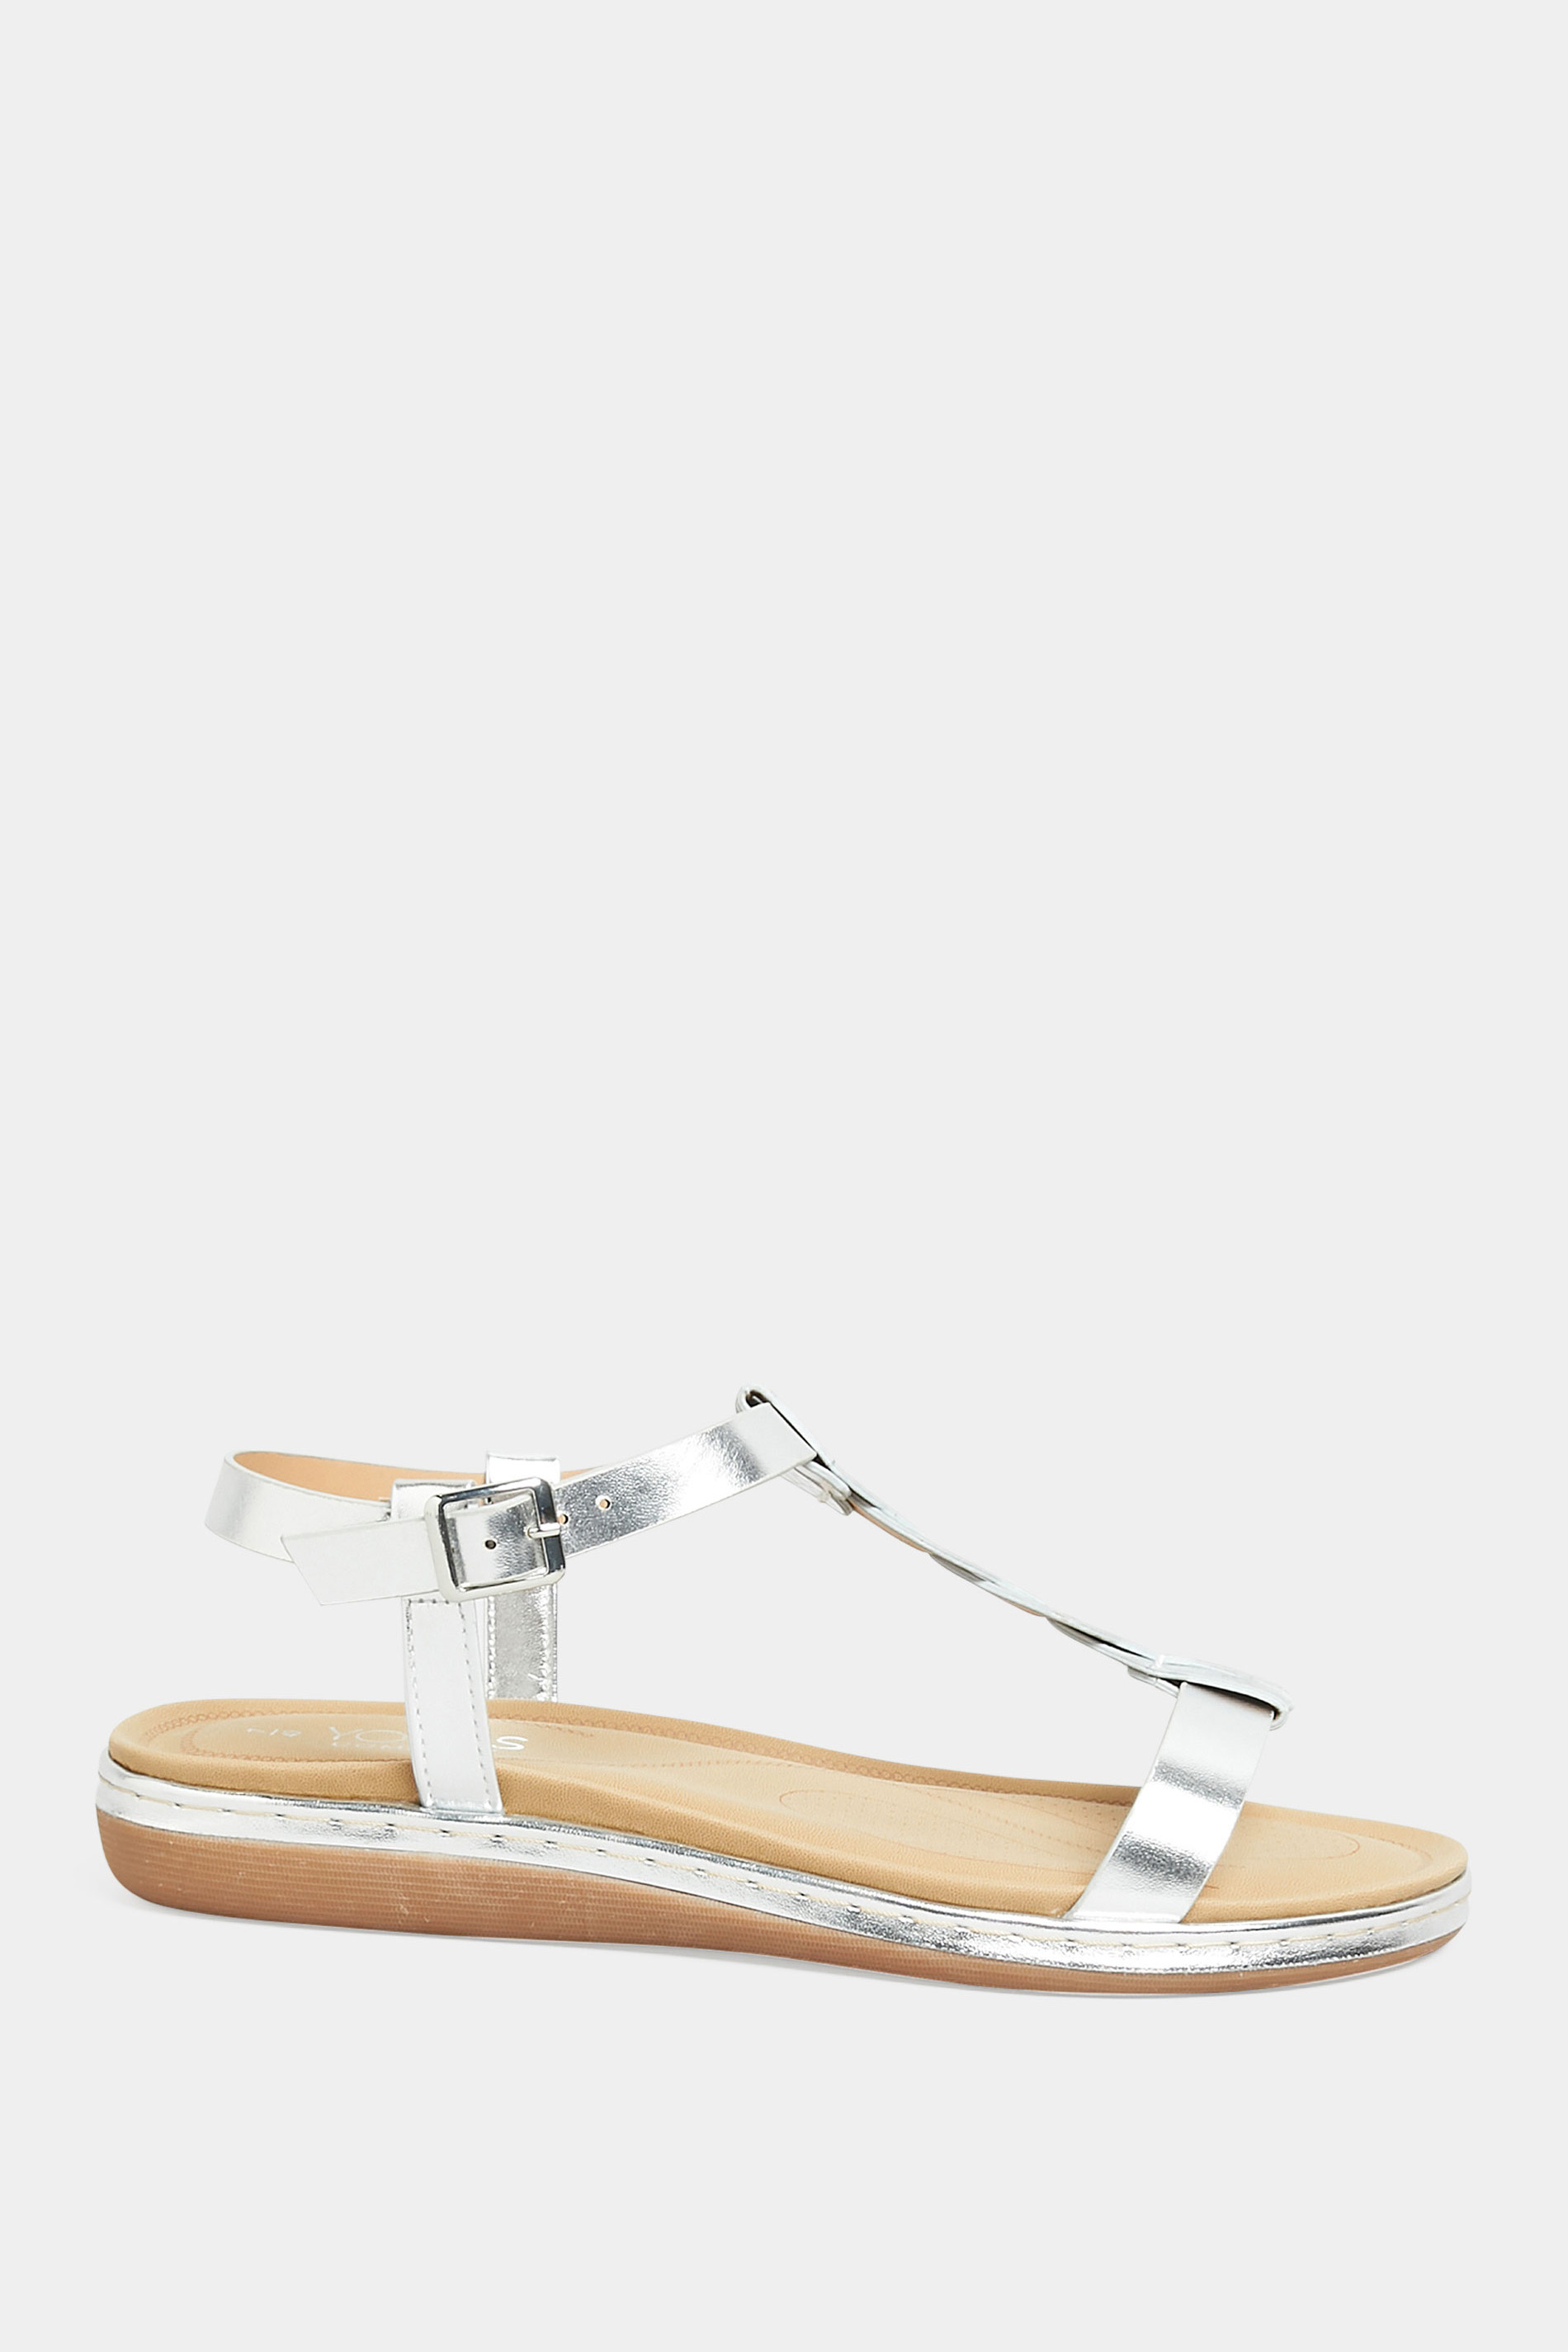 Shop Schutz Elsie Faux Leather Flat Sandals | Saks Fifth Avenue